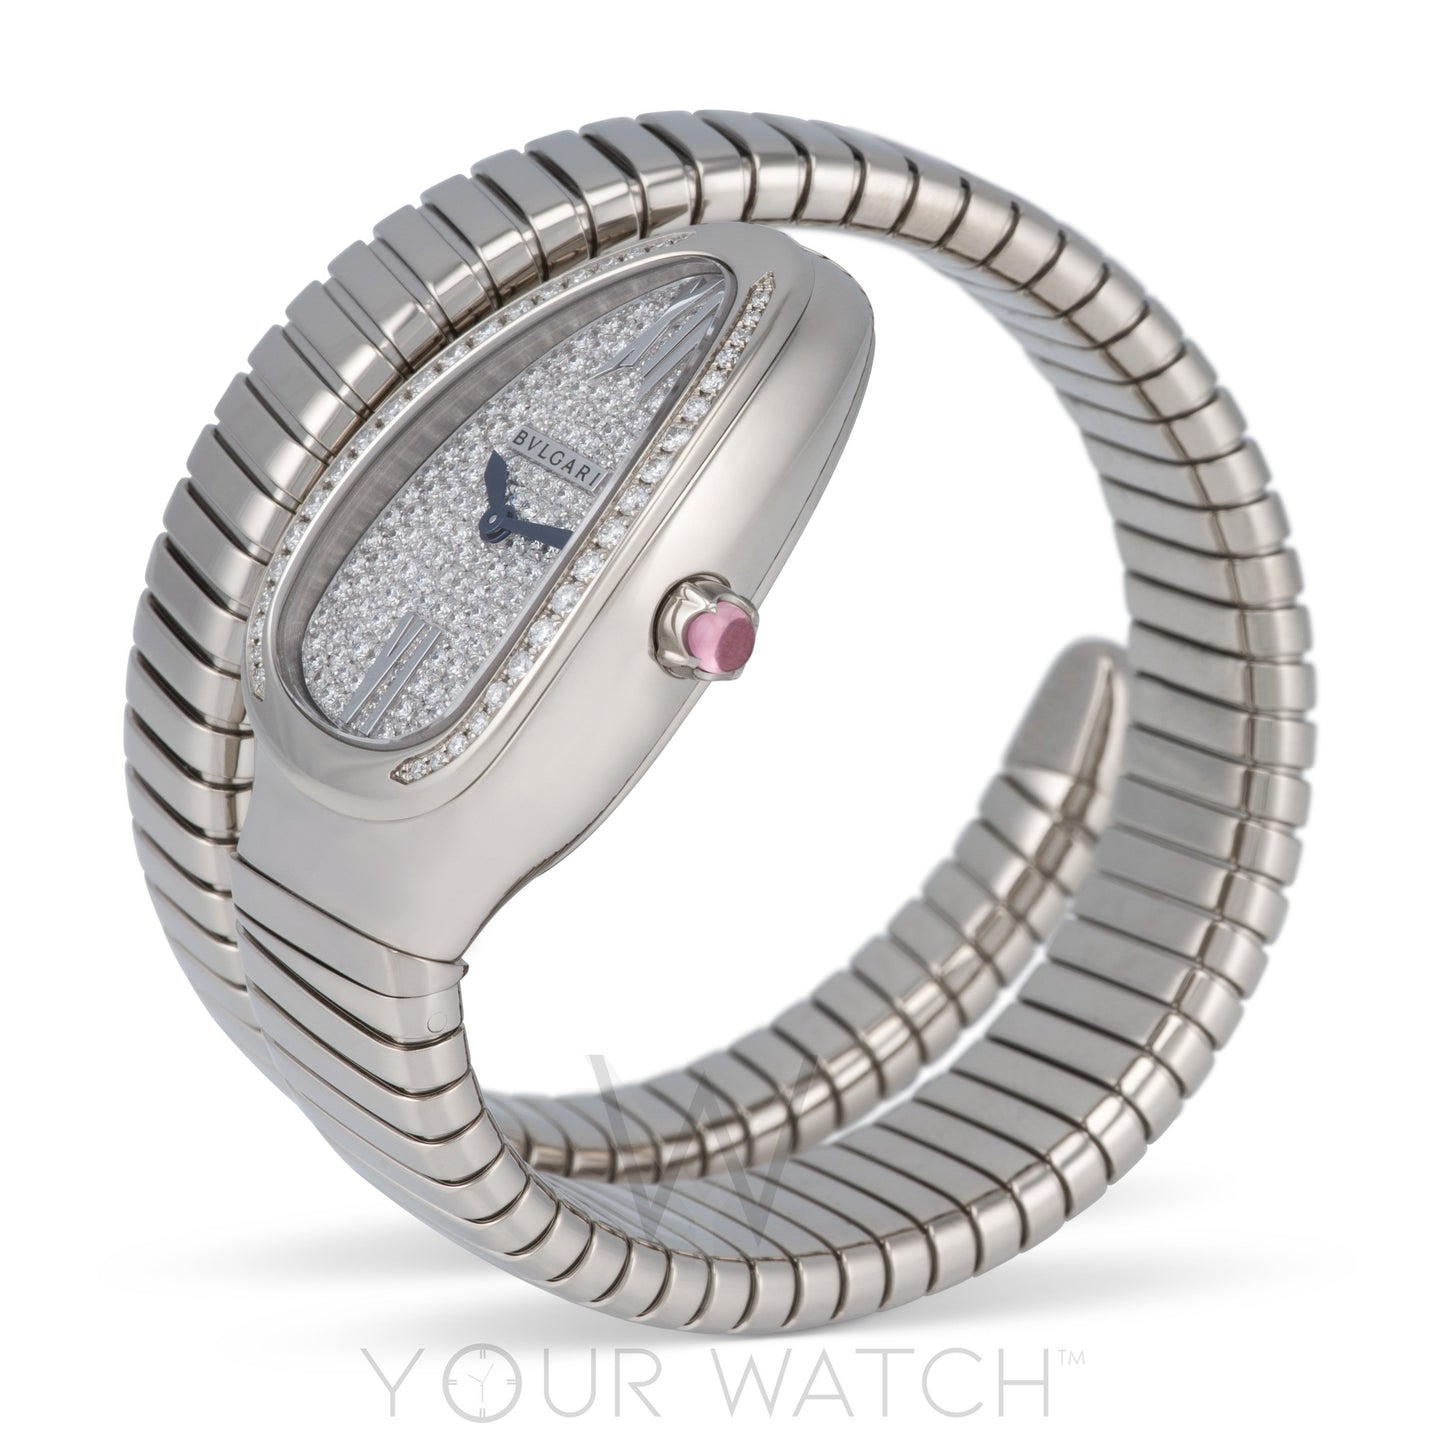 Bvlgari Serpenti Tubogas Diamond Pave Dial Ladies Watch 102005